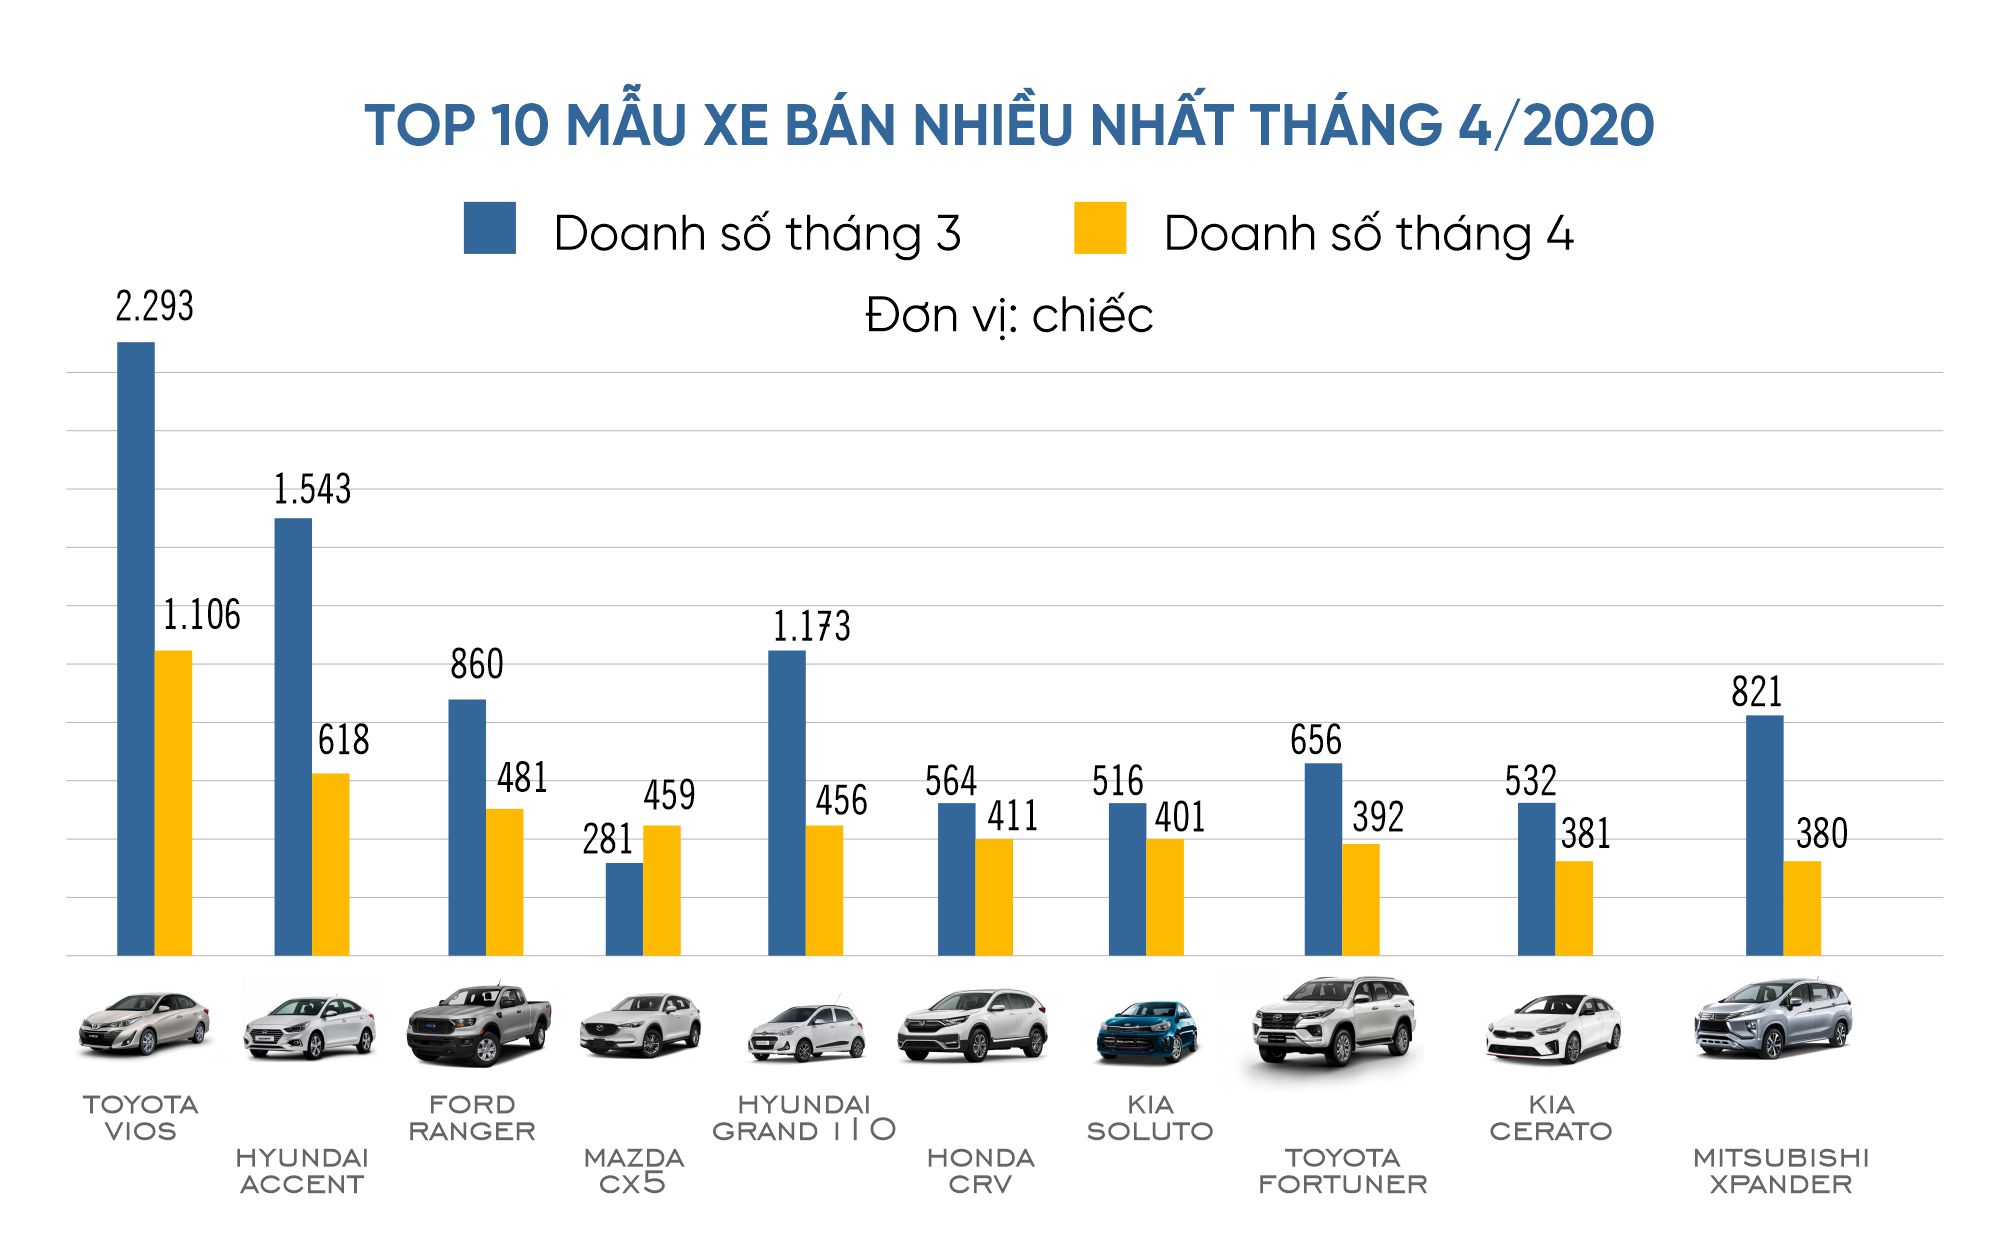 Thị trường ô tô Việt Nam đang trở nên sôi động hơn bao giờ hết. Hãy xem ngay các bức ảnh về thị trường này để biết thêm về những mẫu ô tô tuyệt đẹp và trang thiết bị mới nhất. Đừng để lỡ một cơ hội để cập nhật kiến thức về xe hơi.